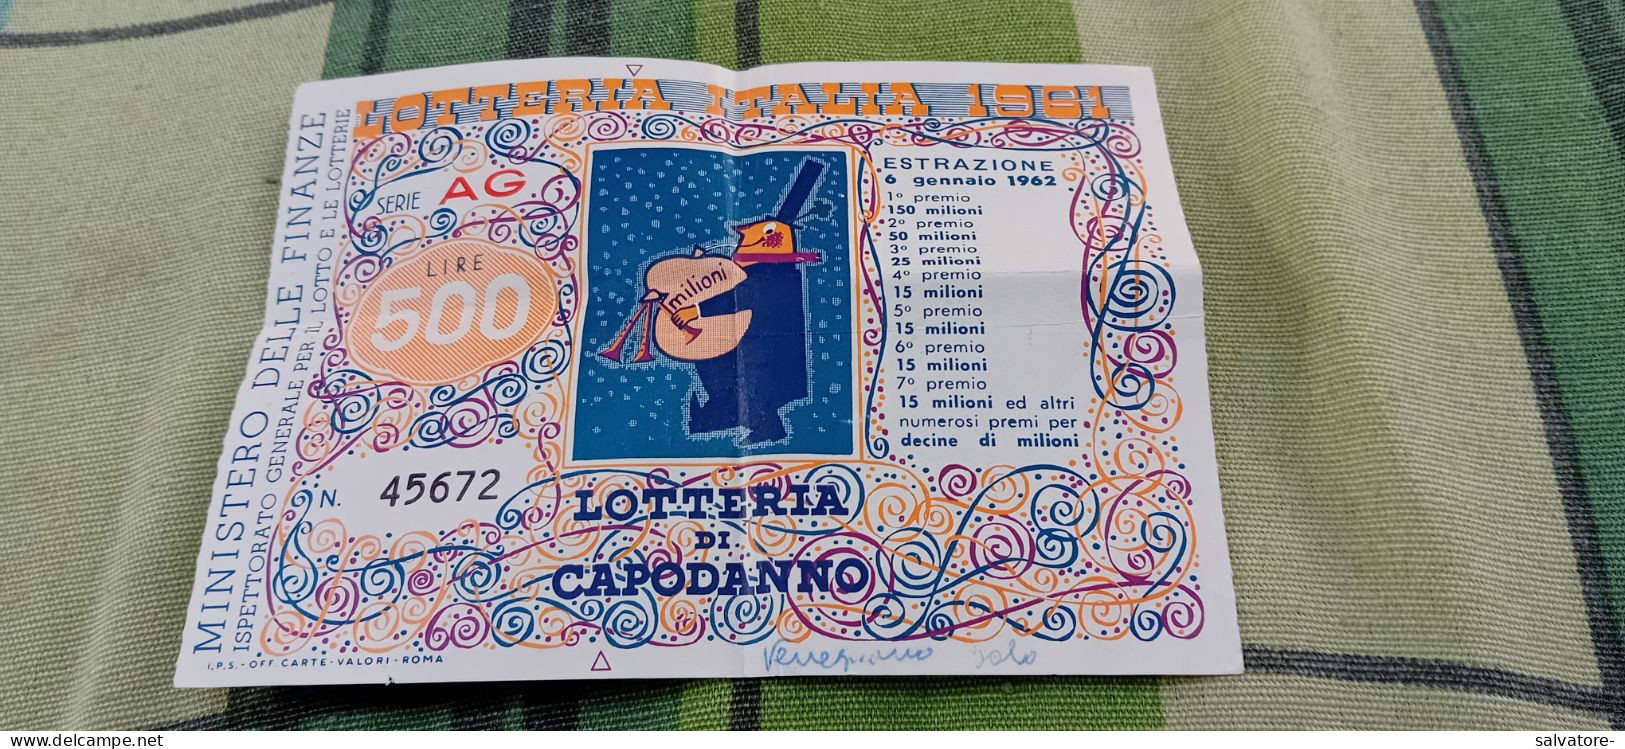 BIGLIETTO LOTTERIA AGNANO 1962 - Loterijbiljetten